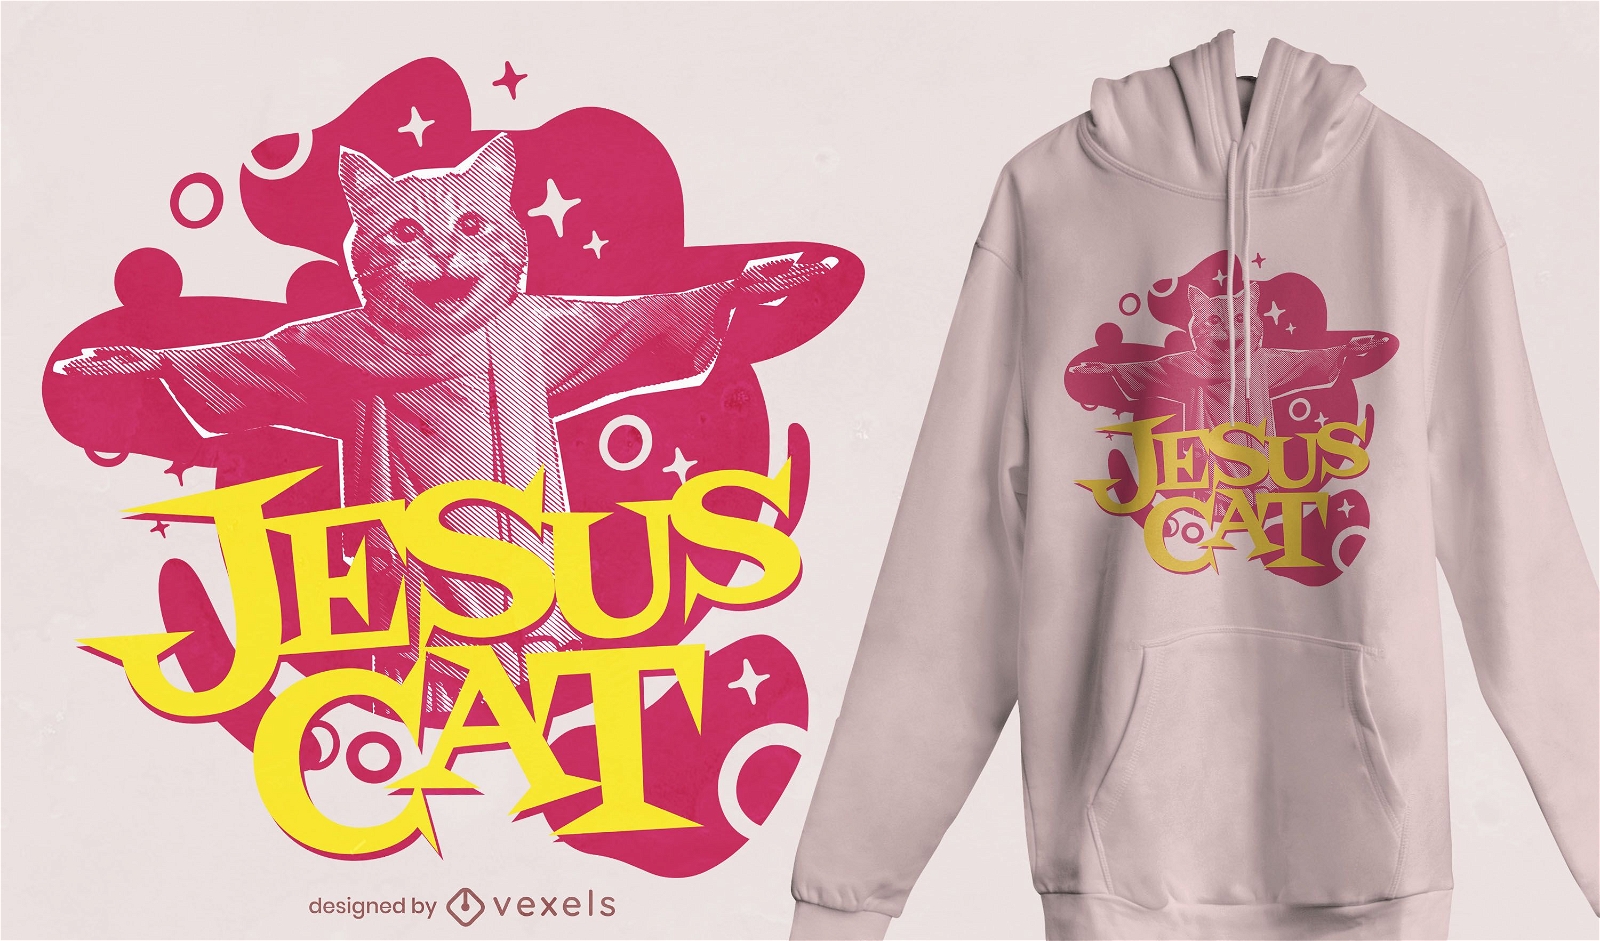 Jesus cat t-shirt design